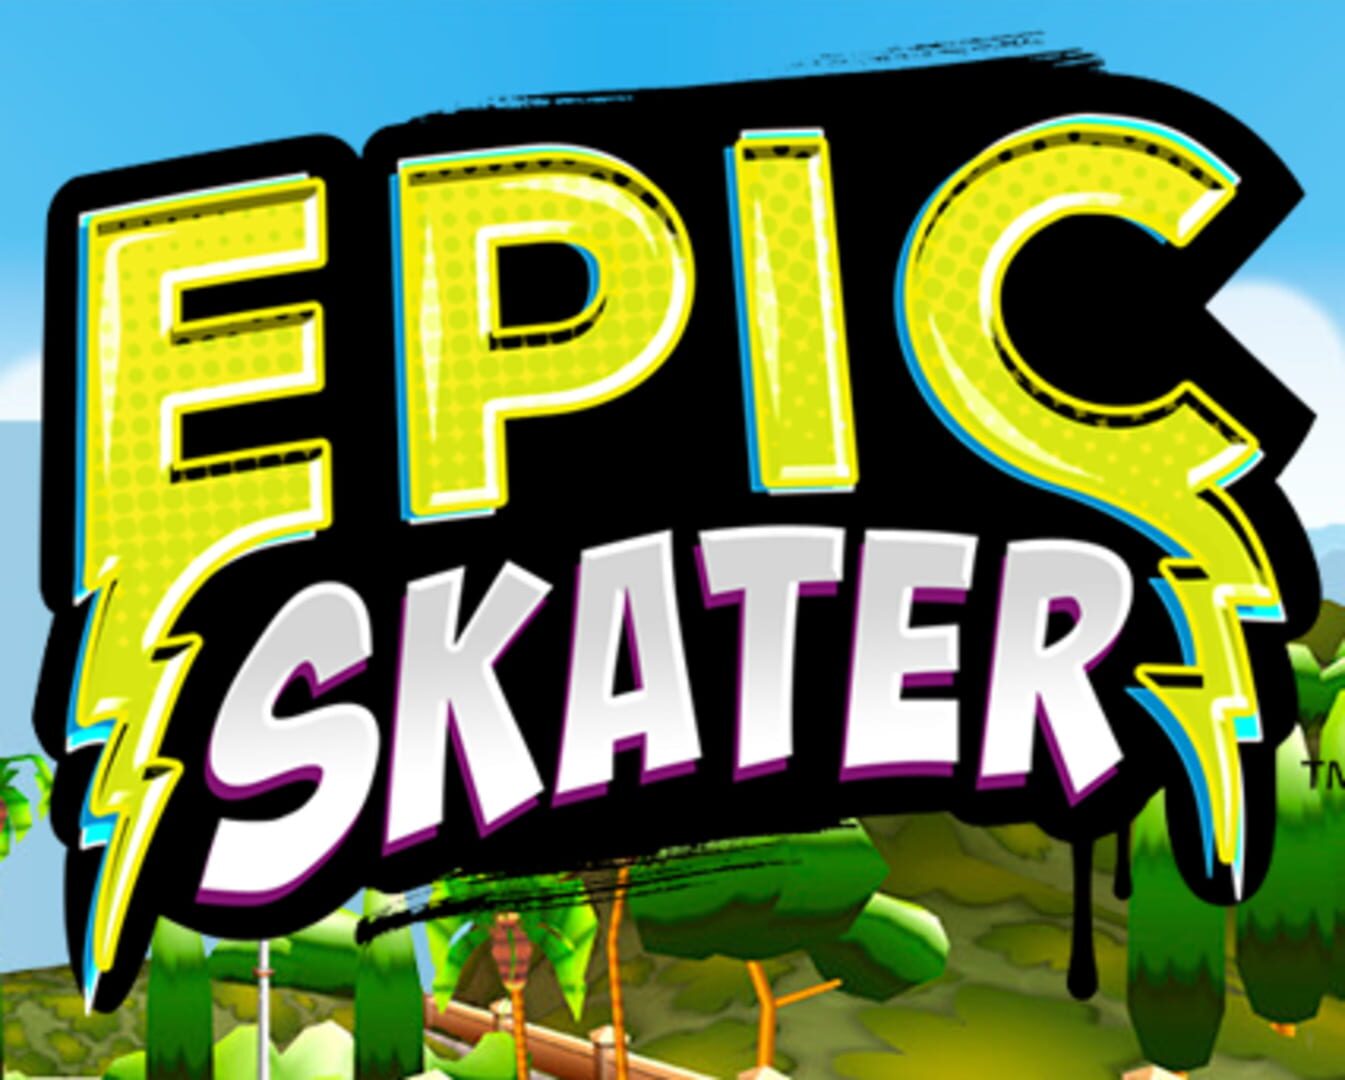 Epic Skater